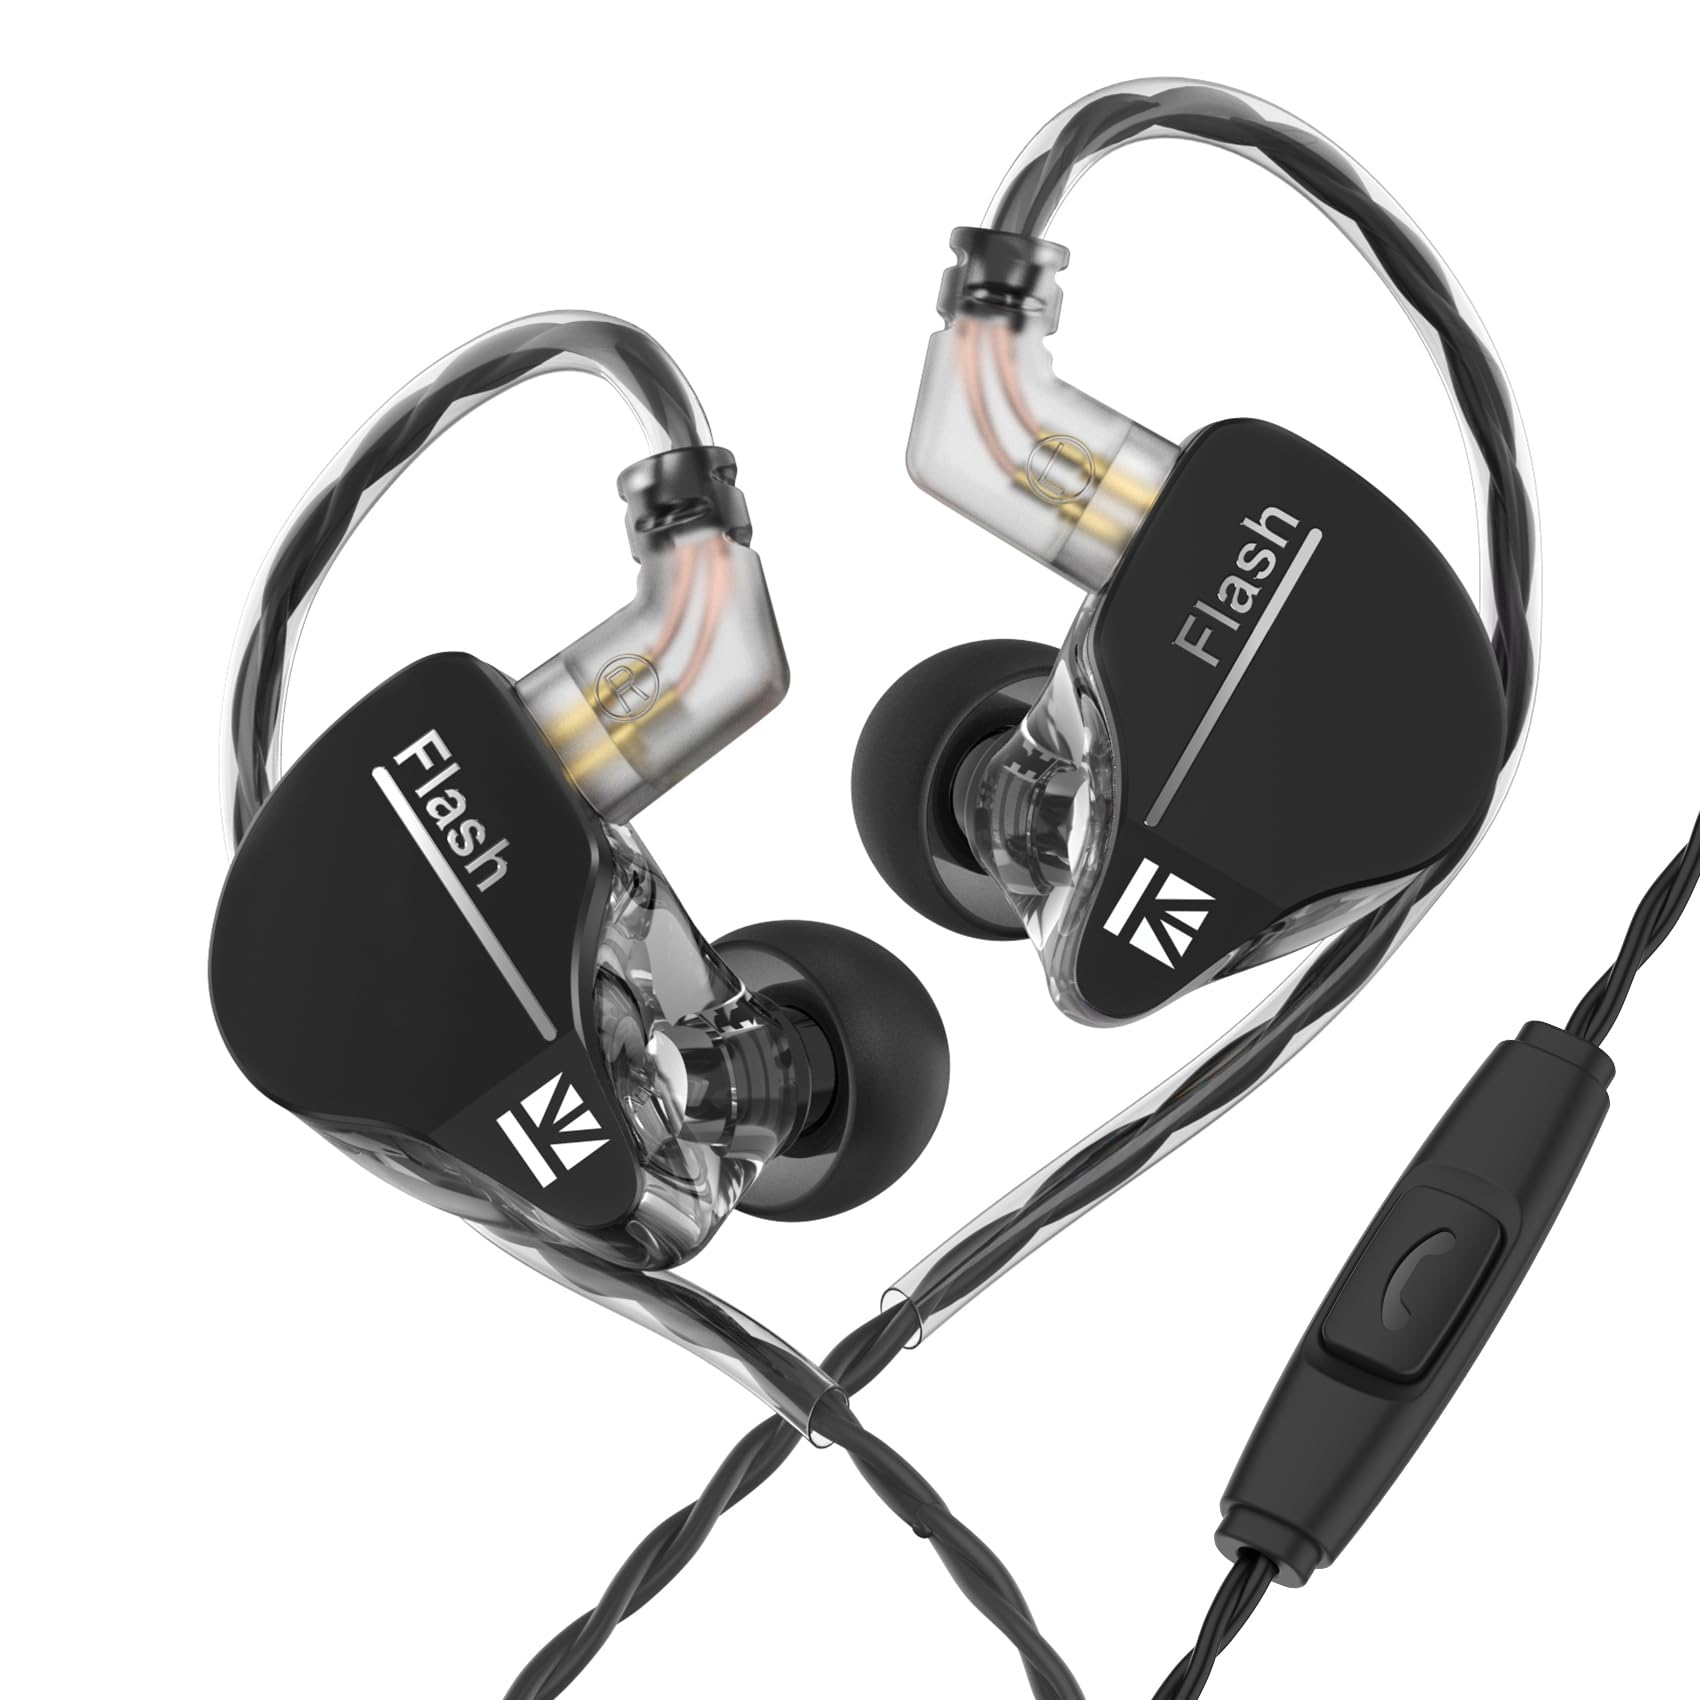 KBEAR Flash Wired Earbuds Earphones 3.5mm Plug in ear Headphones